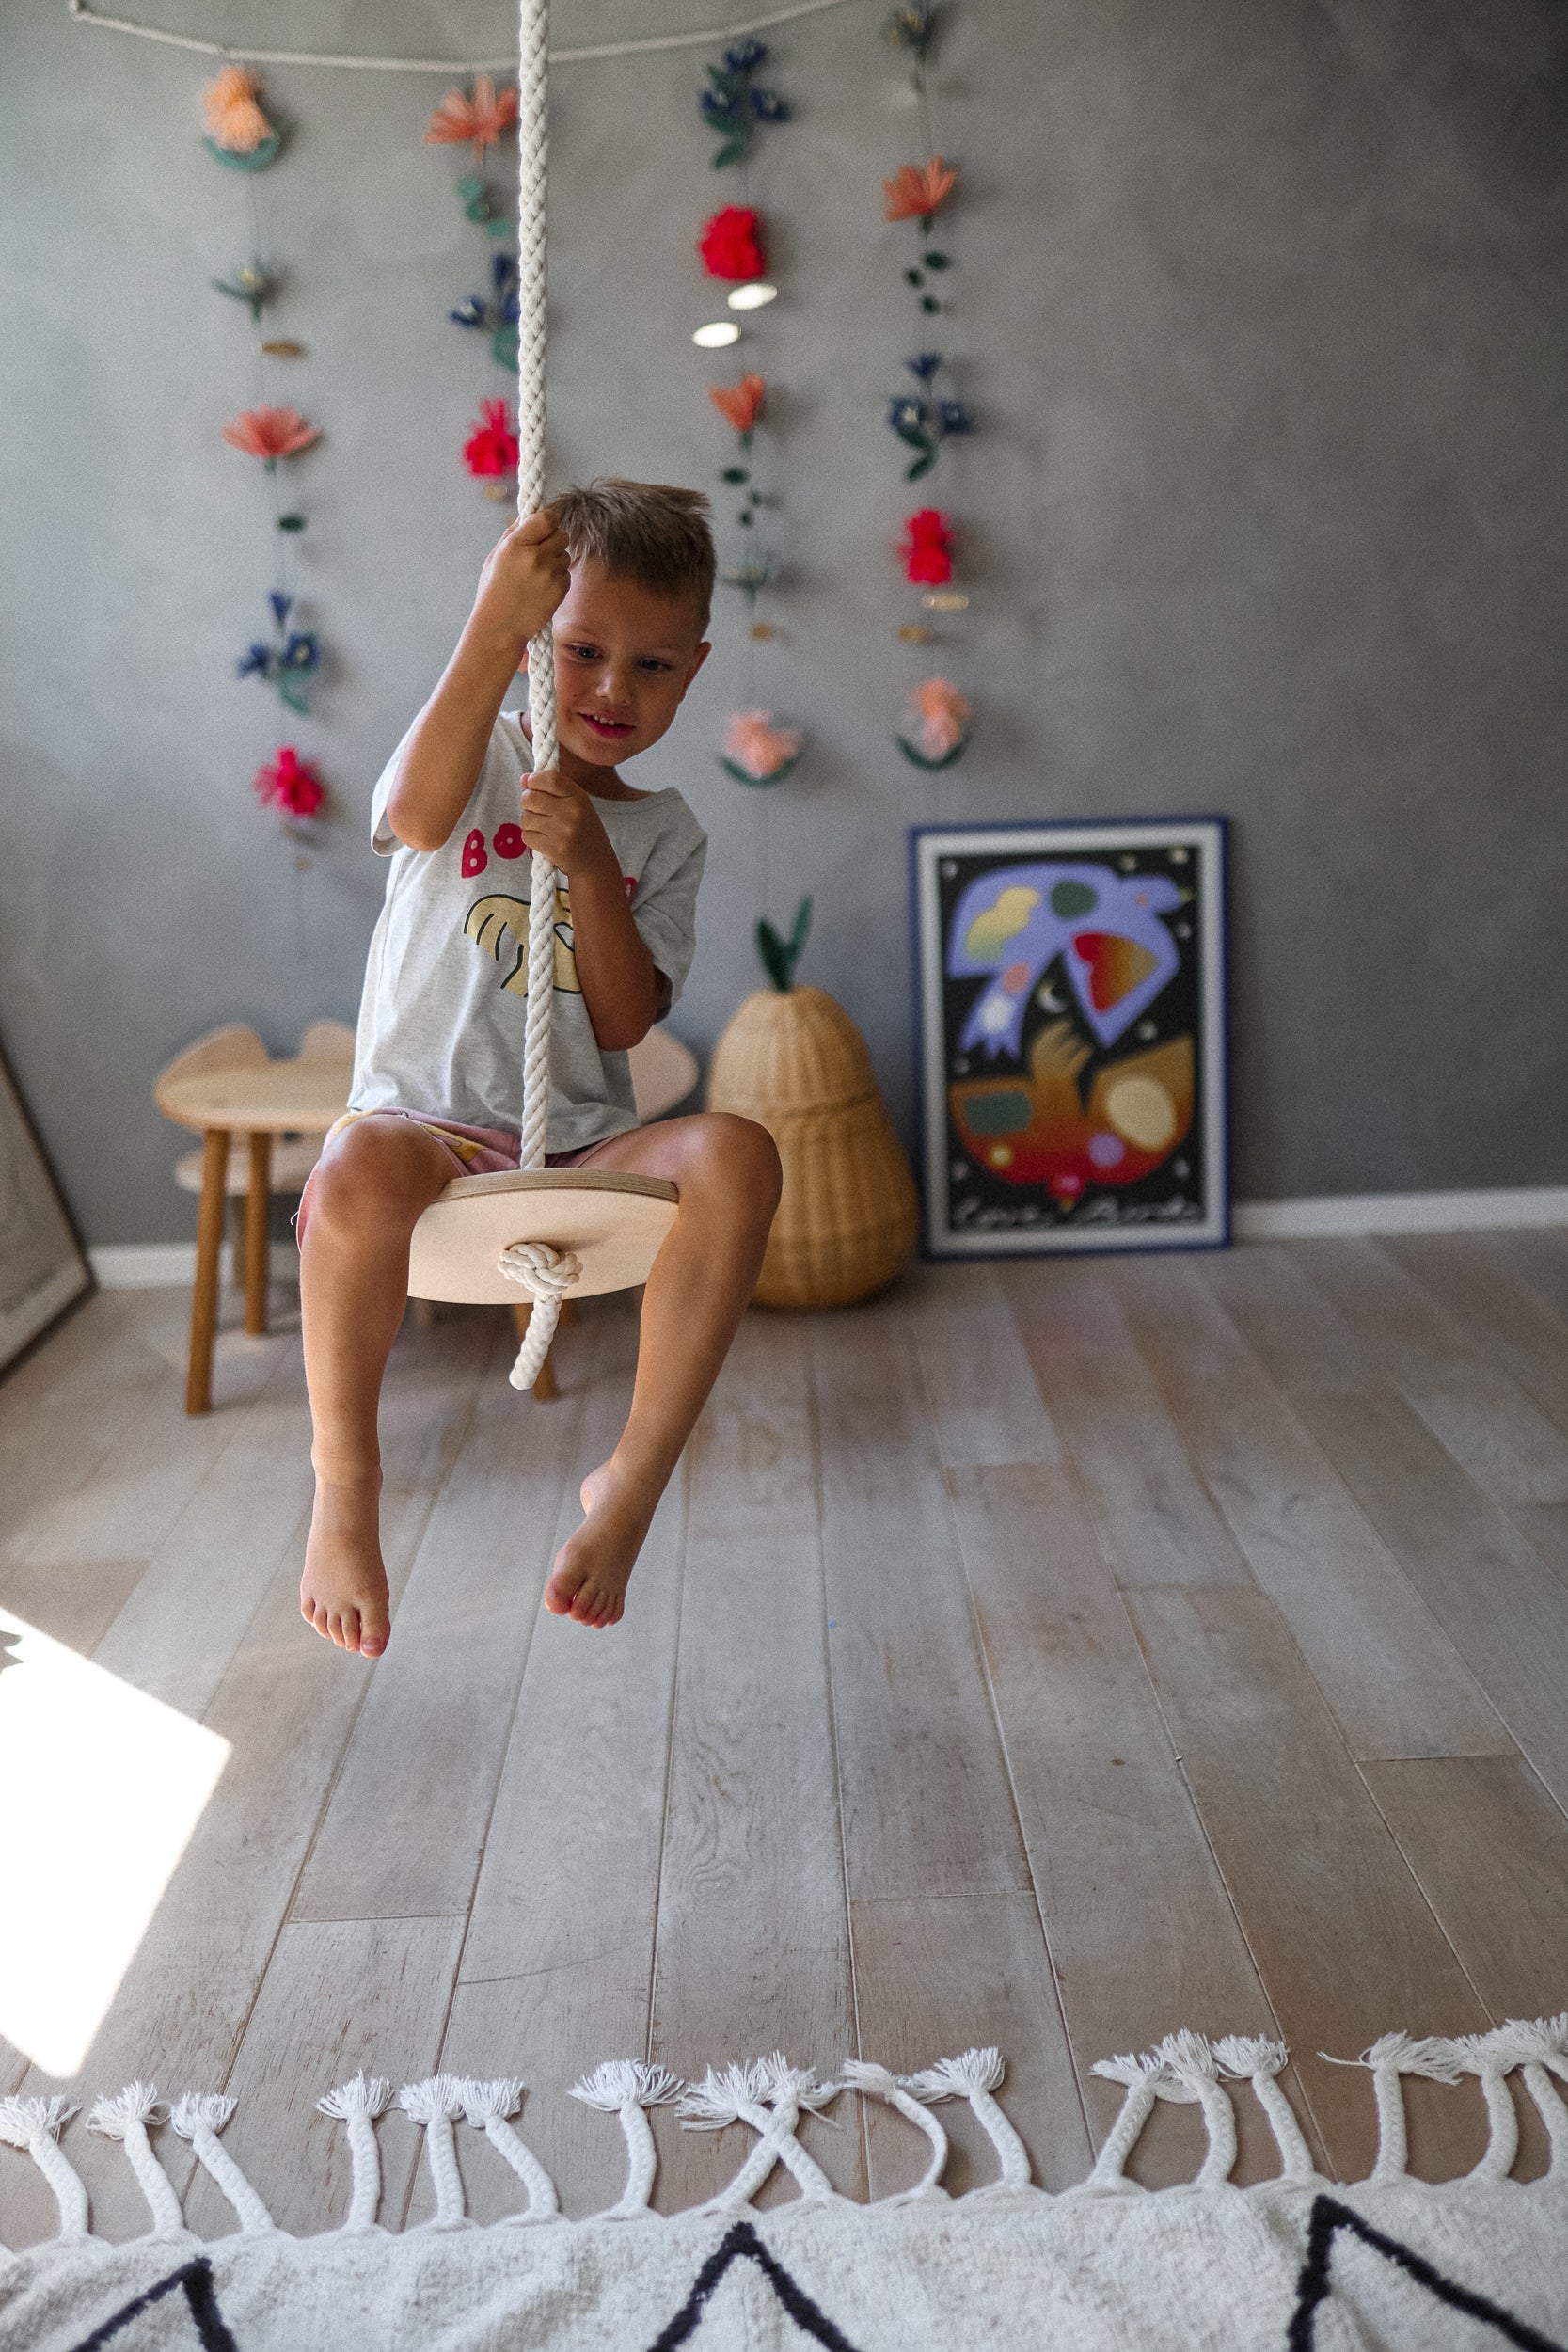 Kinderfeets Schwingende Freude: Kinderfeets Natürliche Holzschaukel! 🌿💫